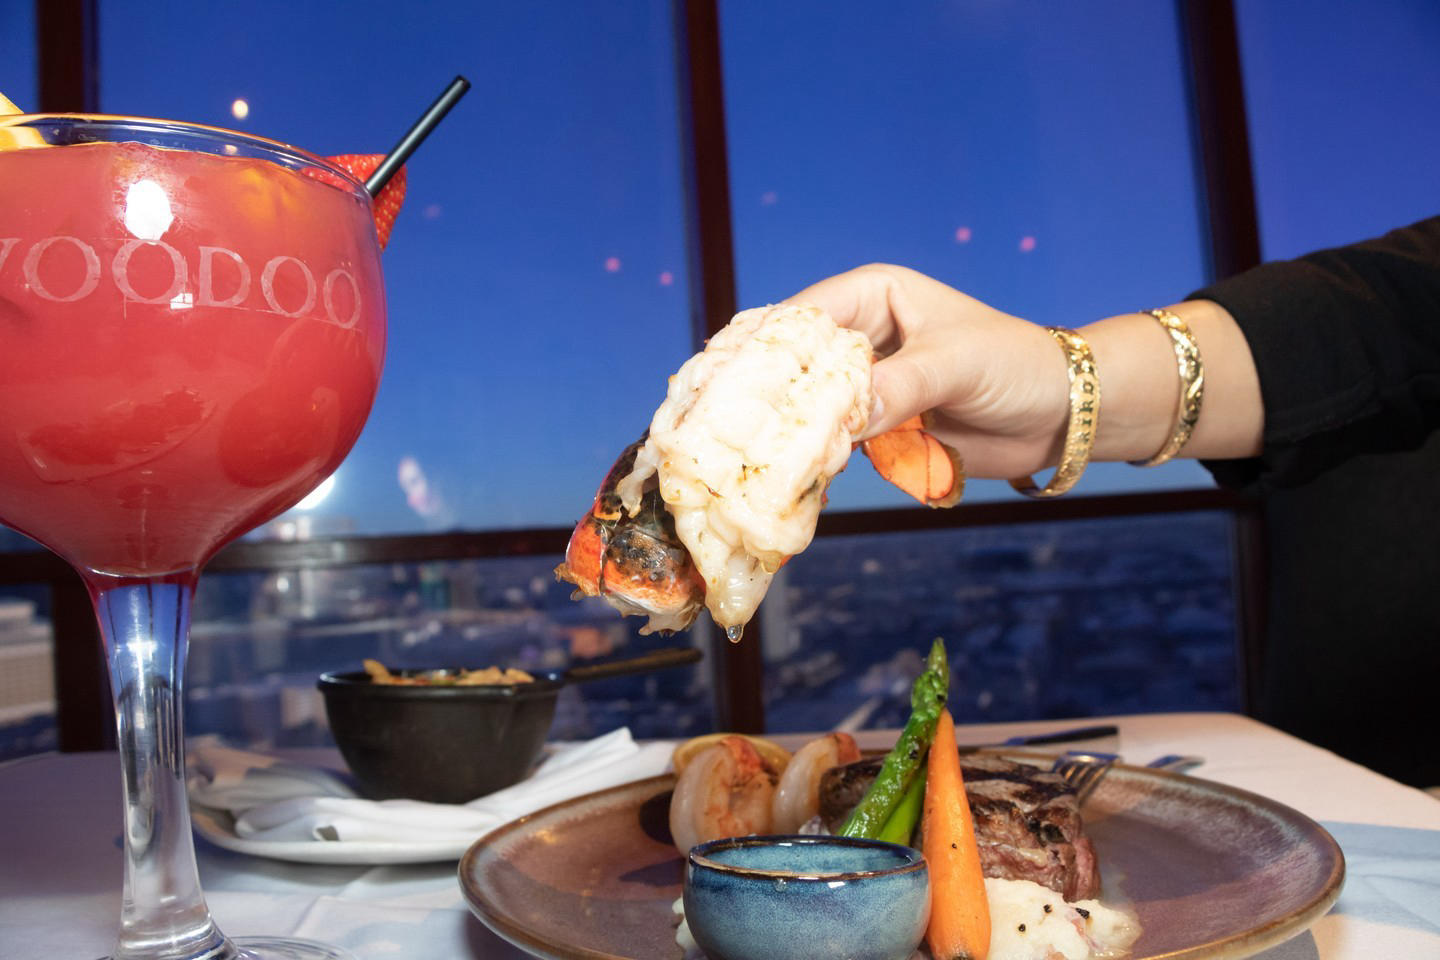 Rio Las Vegas - Lobster dinner from the 50th floor